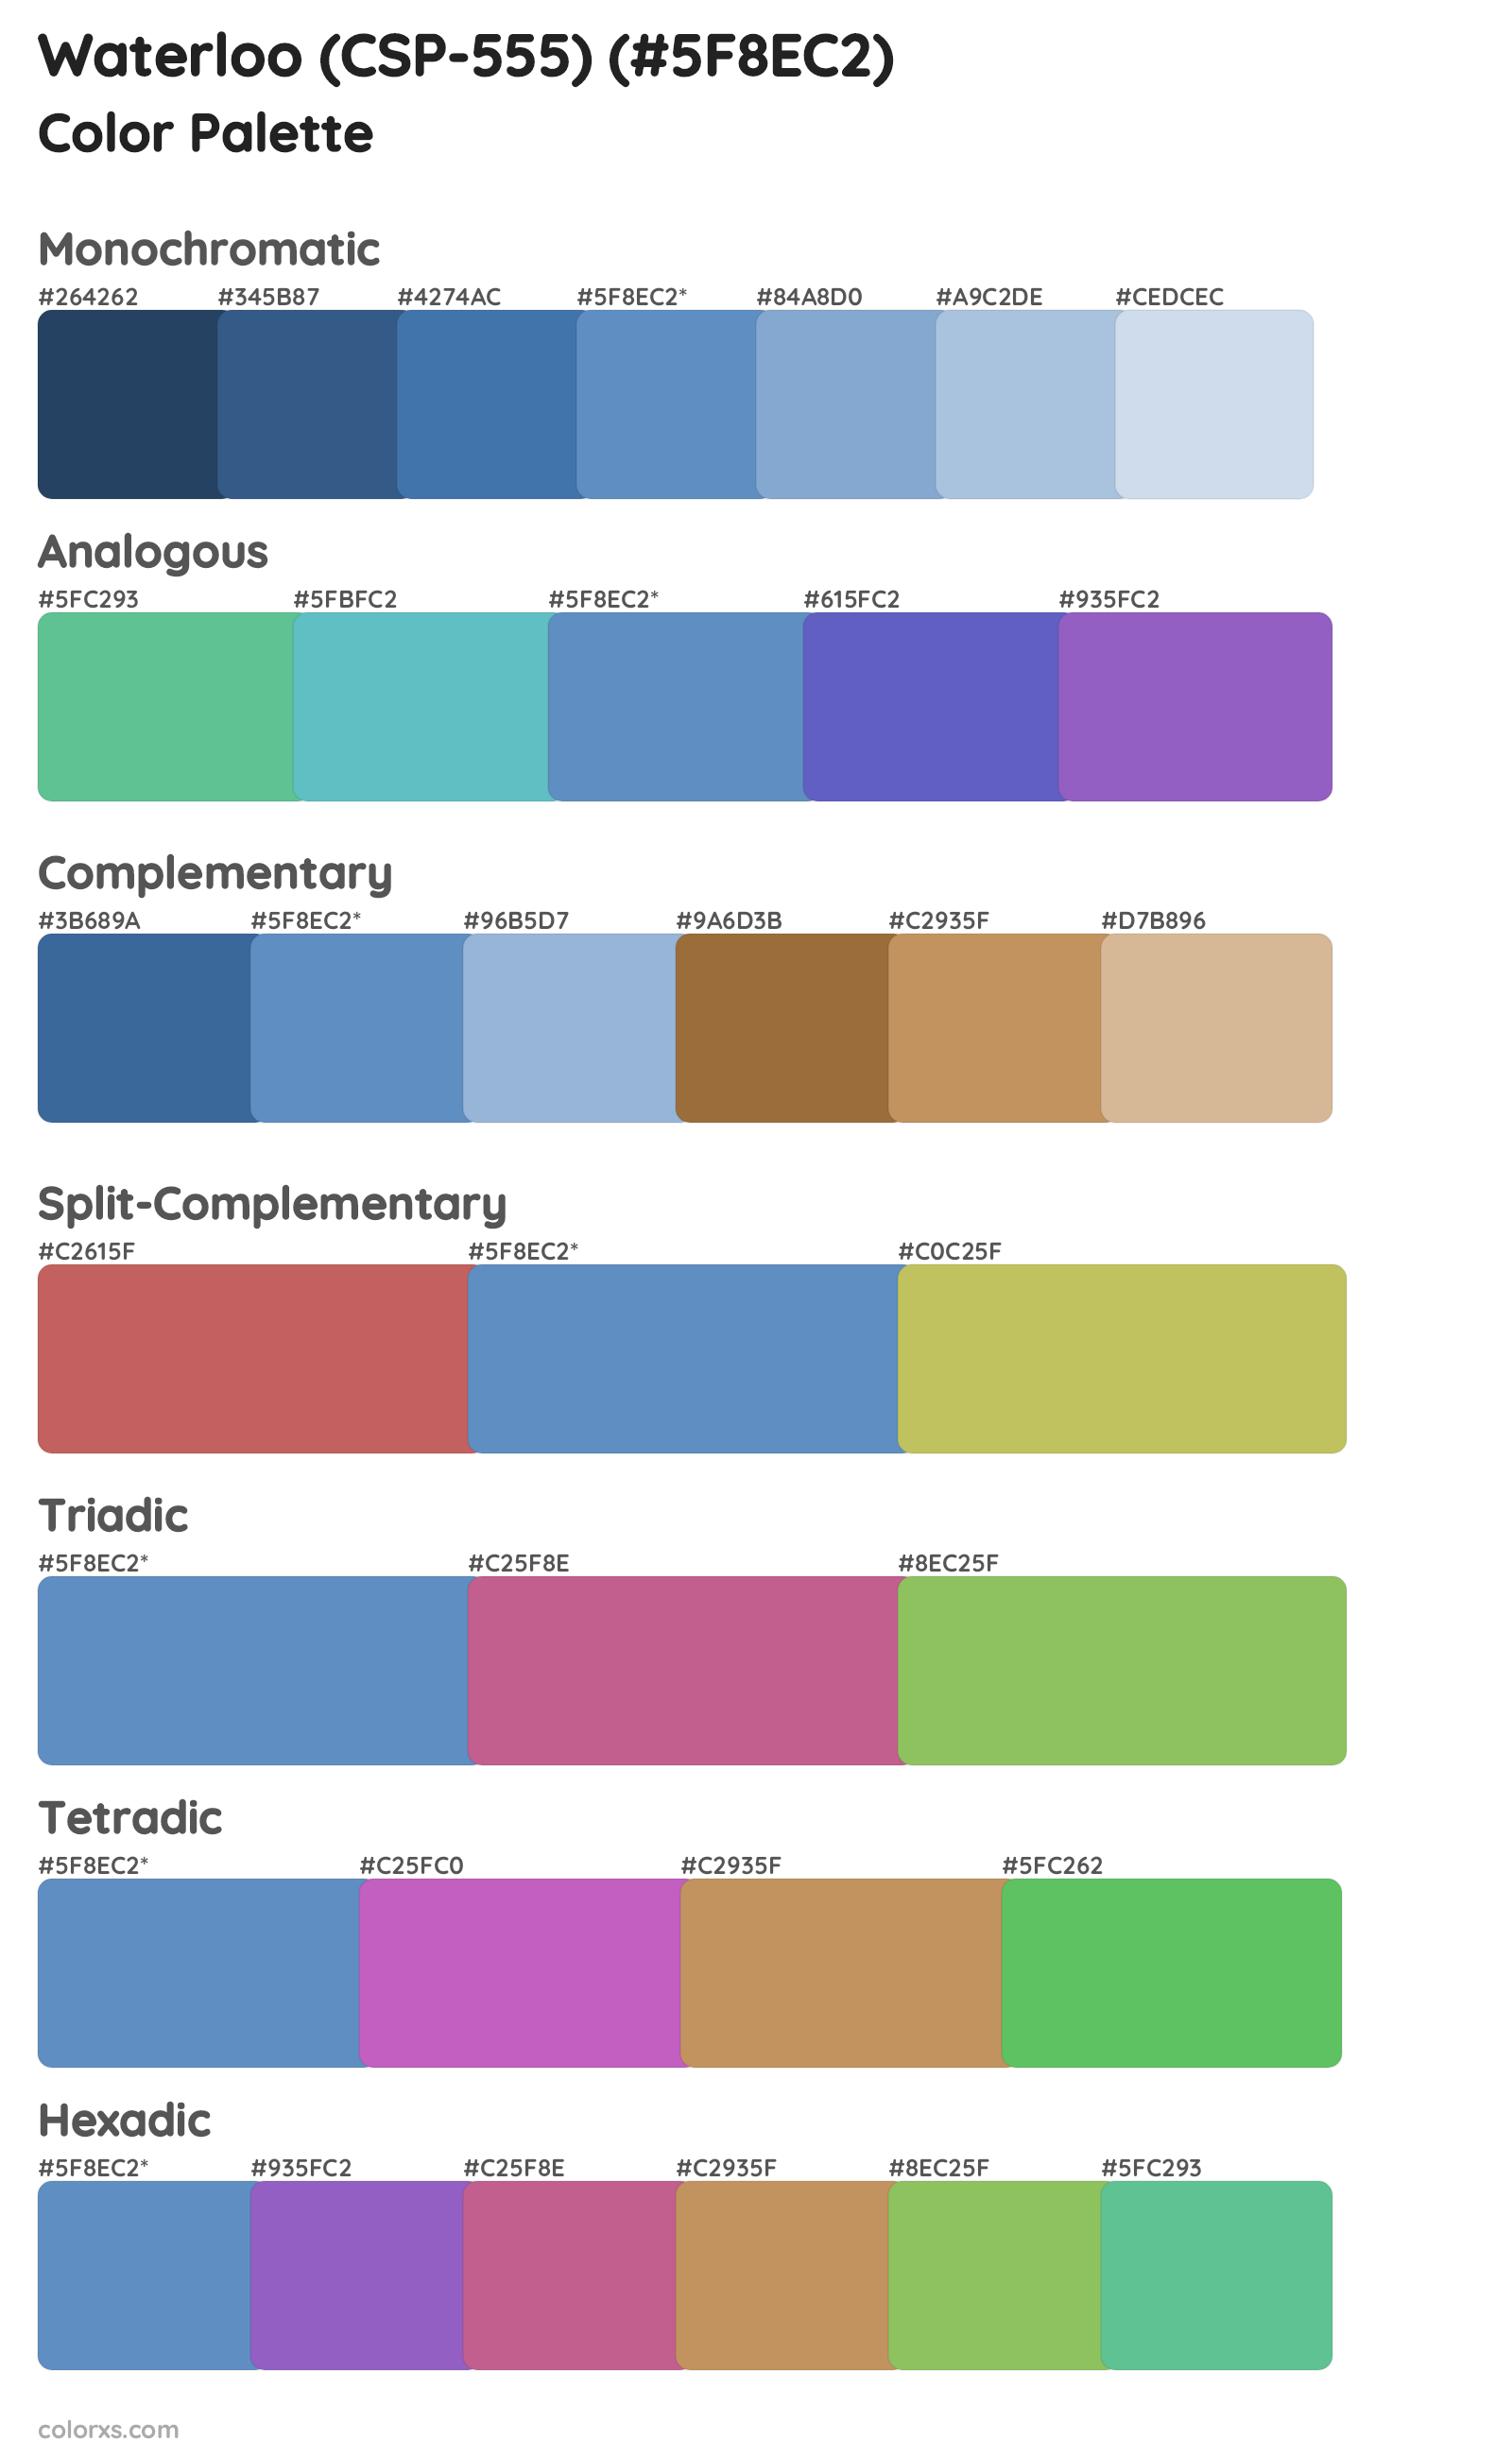 Waterloo (CSP-555) Color Scheme Palettes